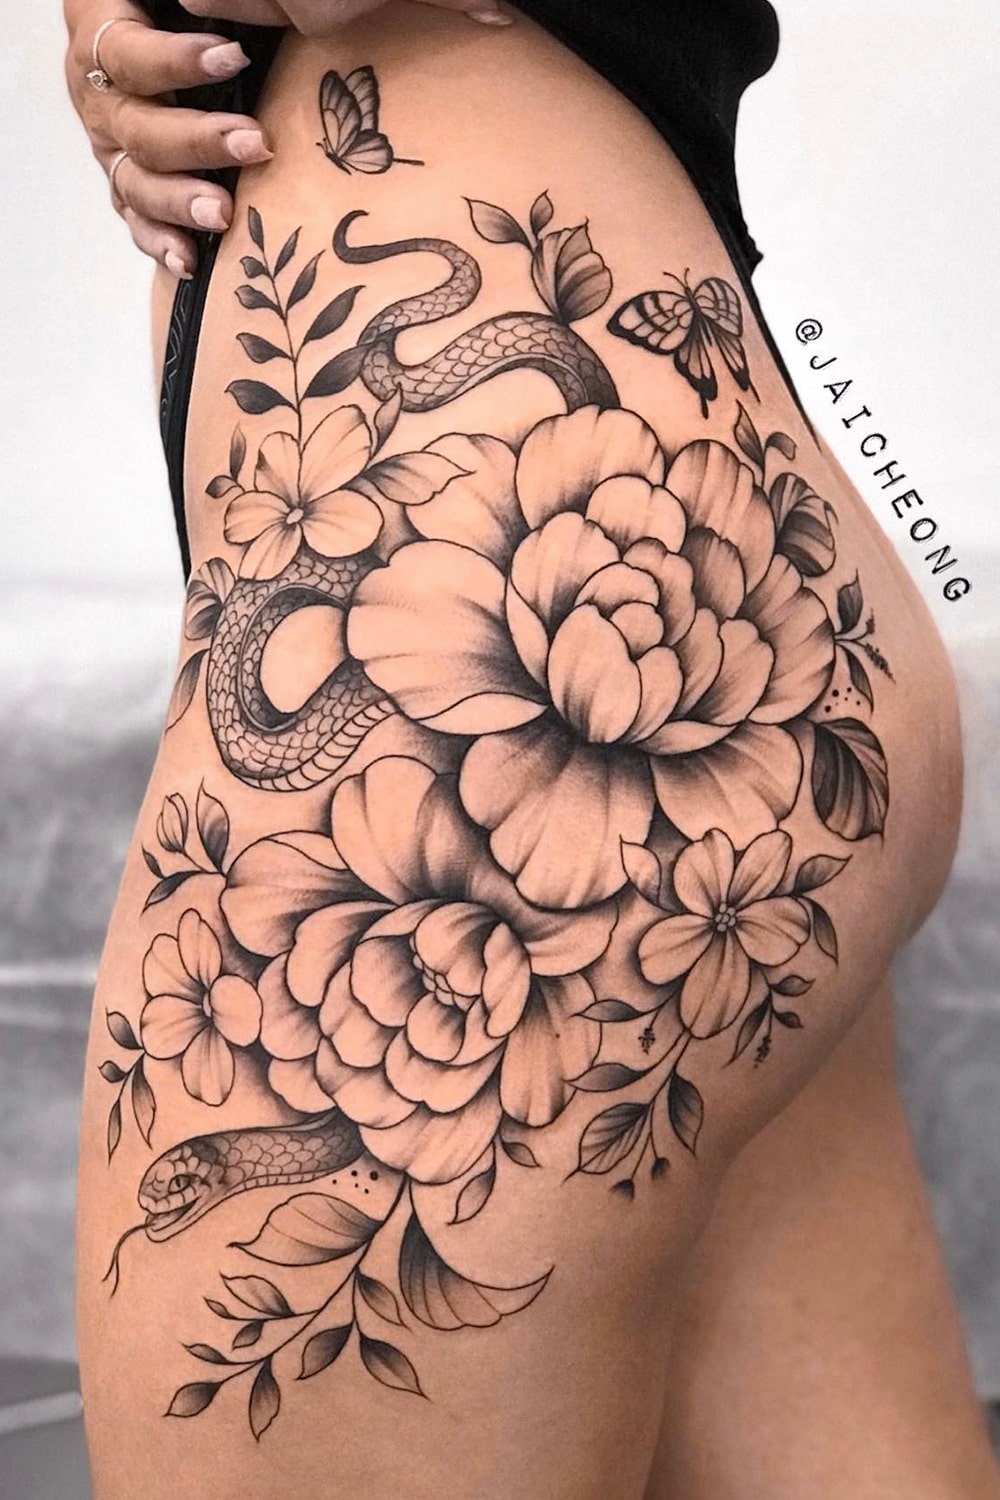 Tatuagem flores na bunda